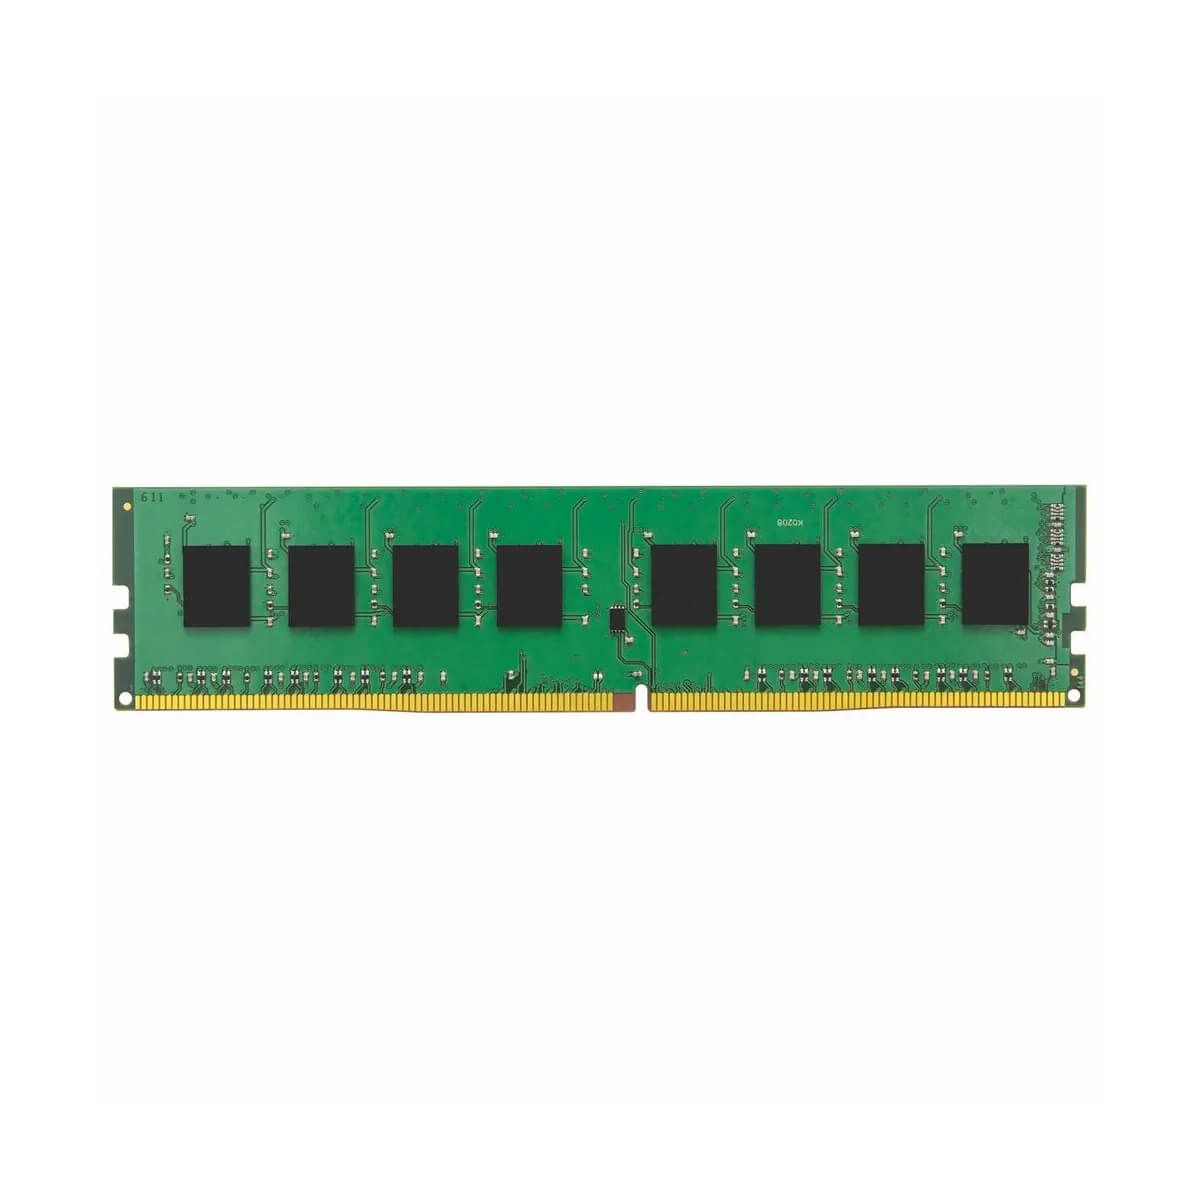 kiwi Ciencias Sociales Surrey Memoria RAM Kingston ValueRAM DDR4, 2400MHz, 8GB - Coimprit